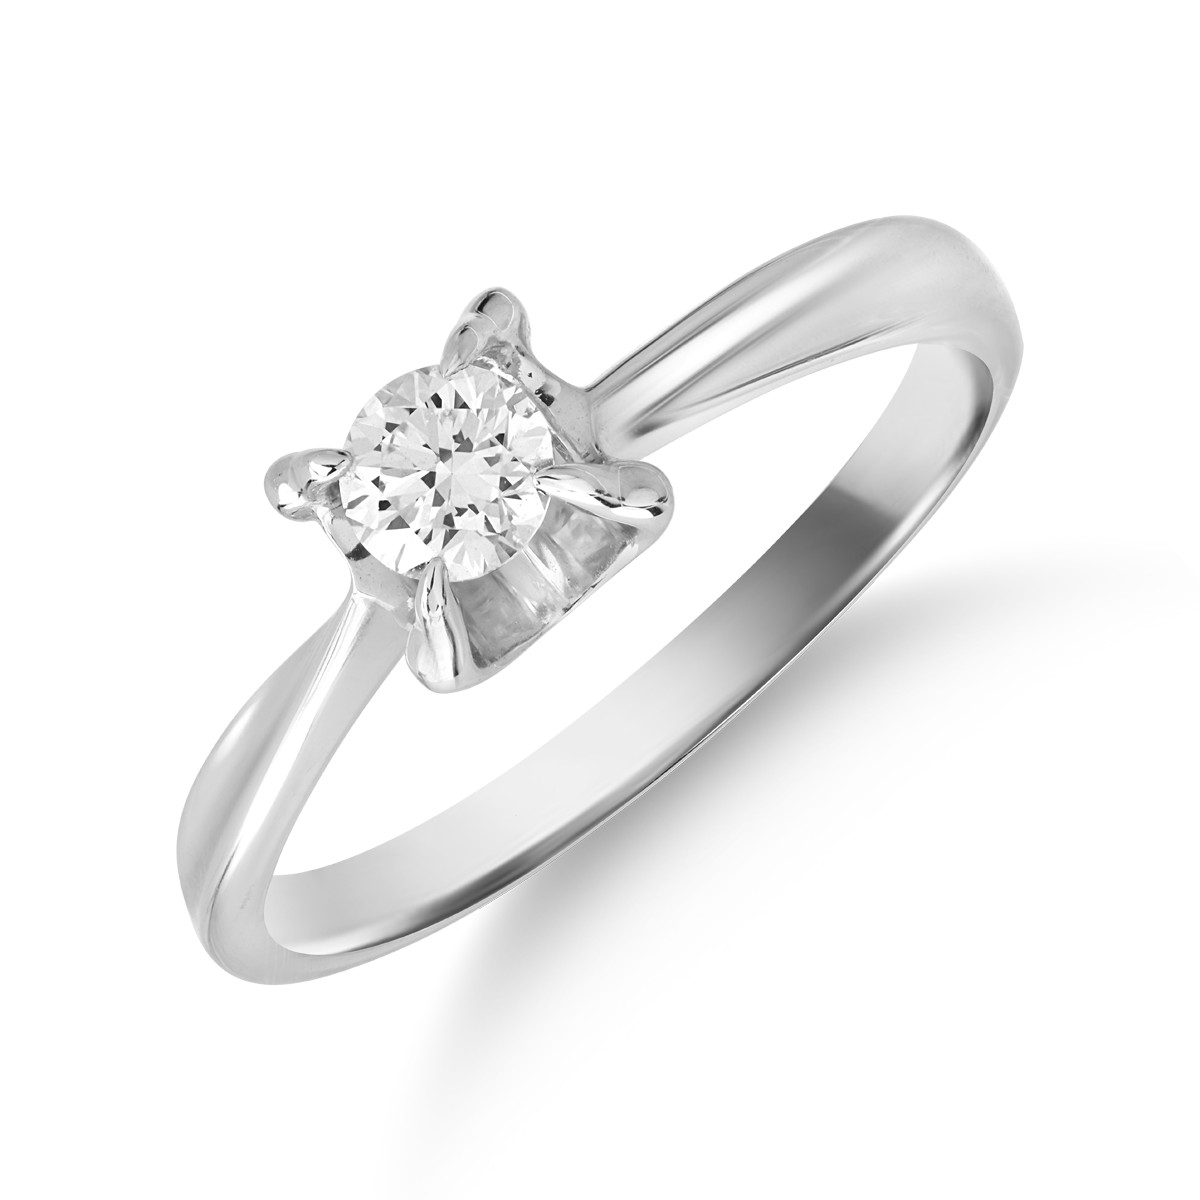 Inel de logodna din aur alb de 18K cu un diamant solitaire de 0.18ct